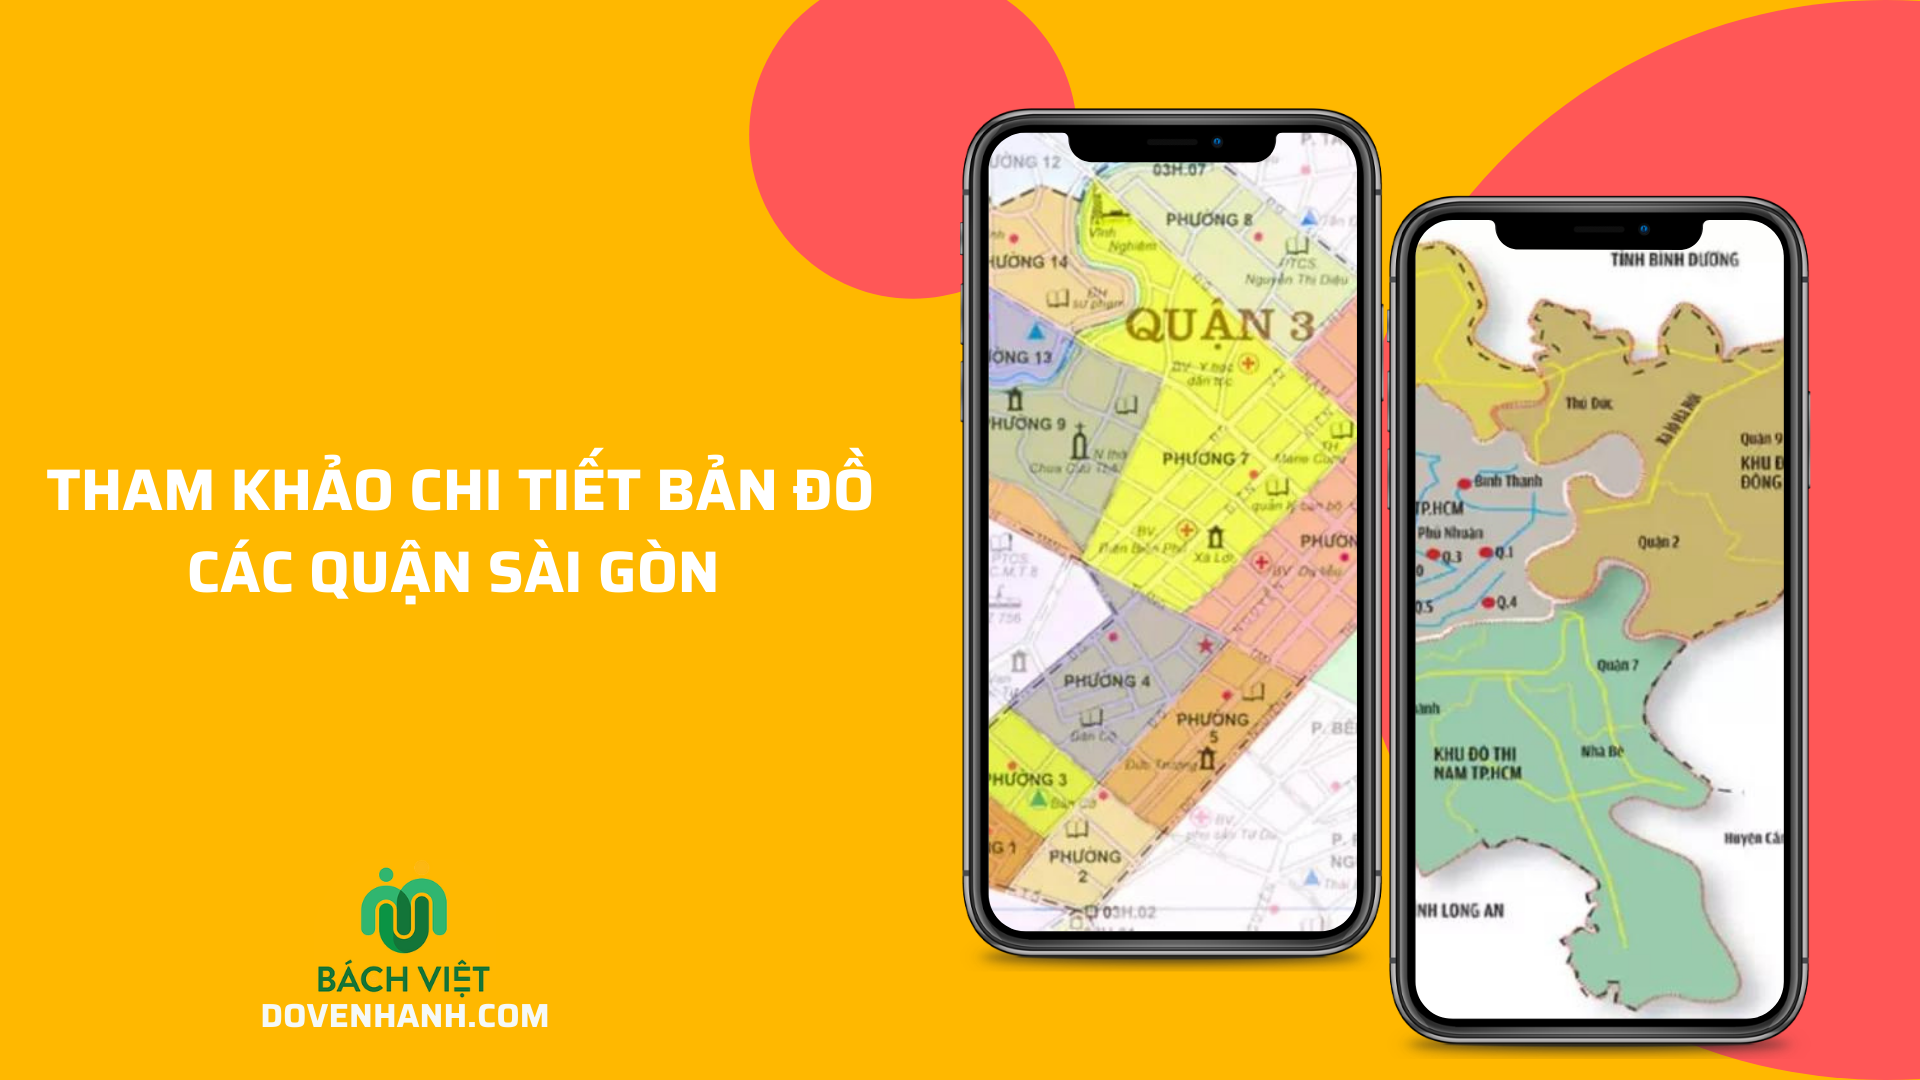 Tham khảo chi tiết bản đồ các quận Sài Gòn